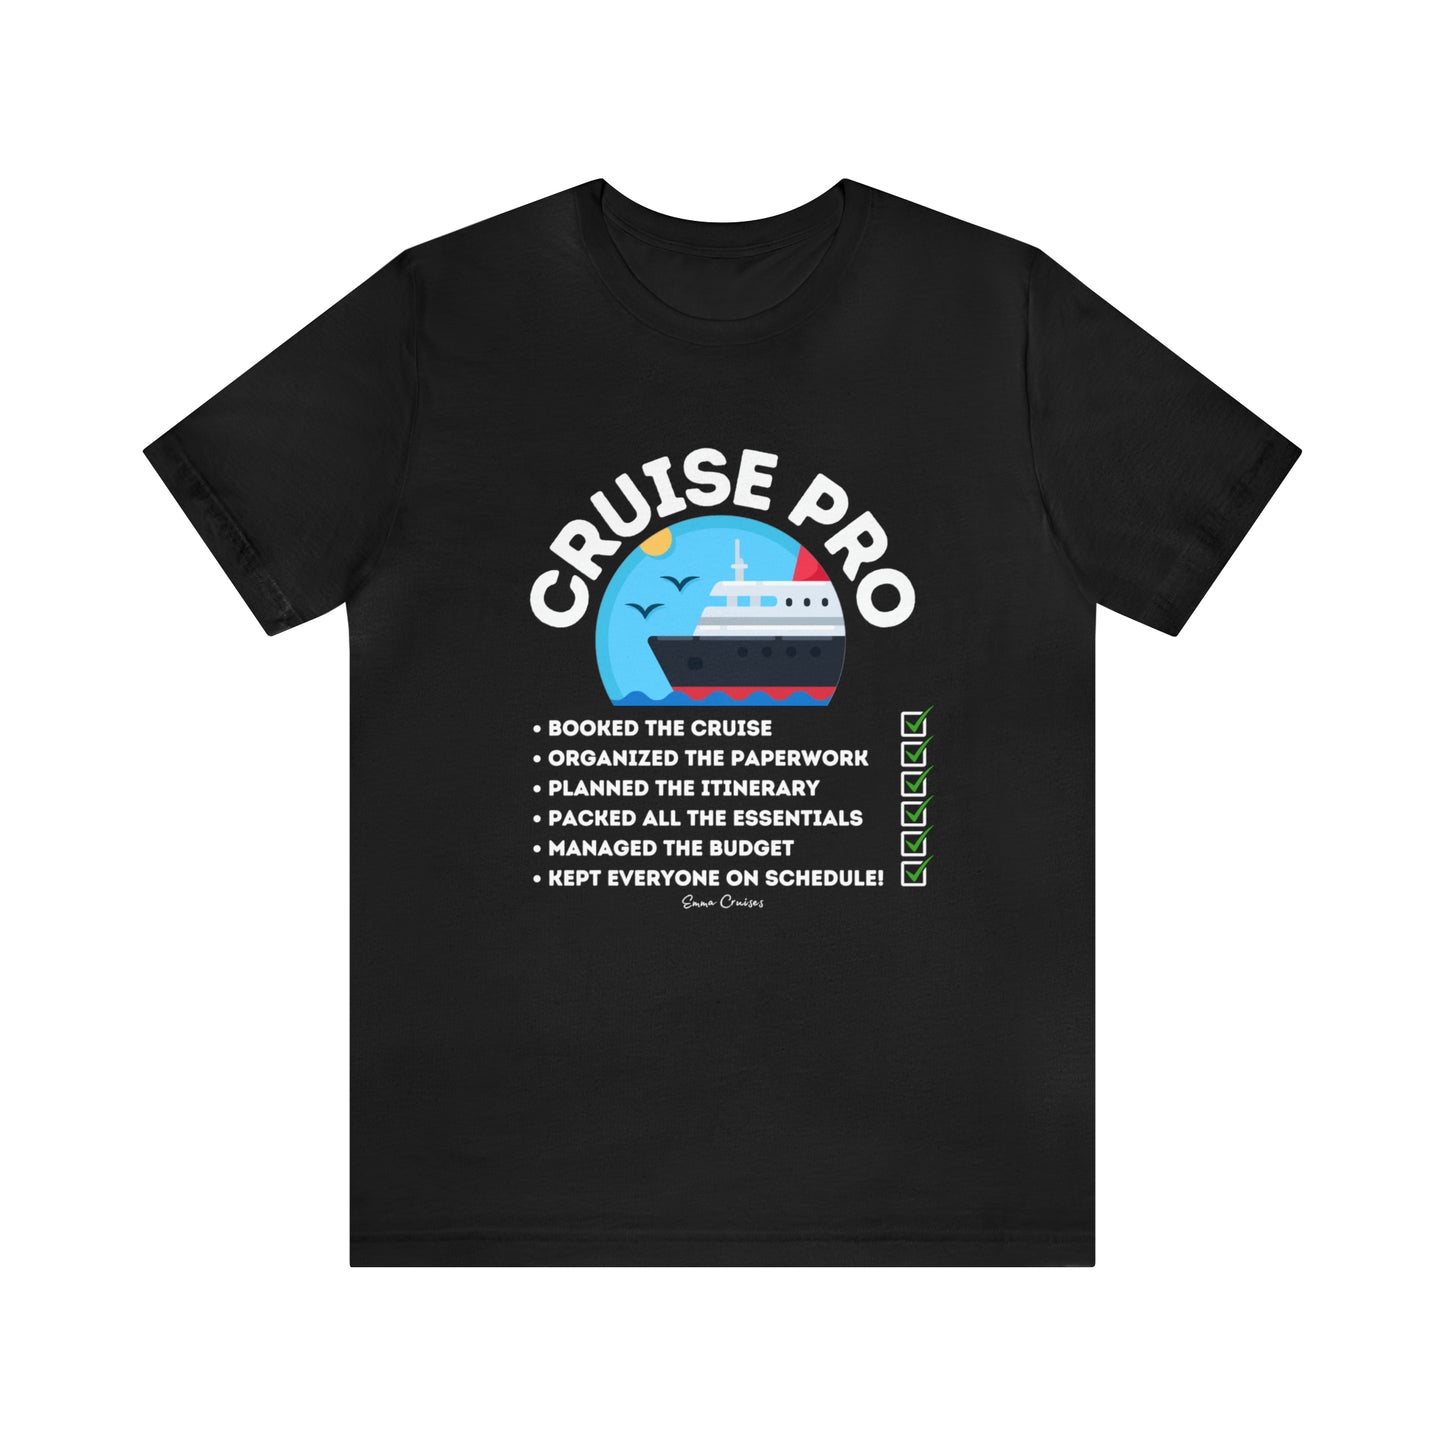 I'm a Cruise Pro - UNISEX T-Shirt